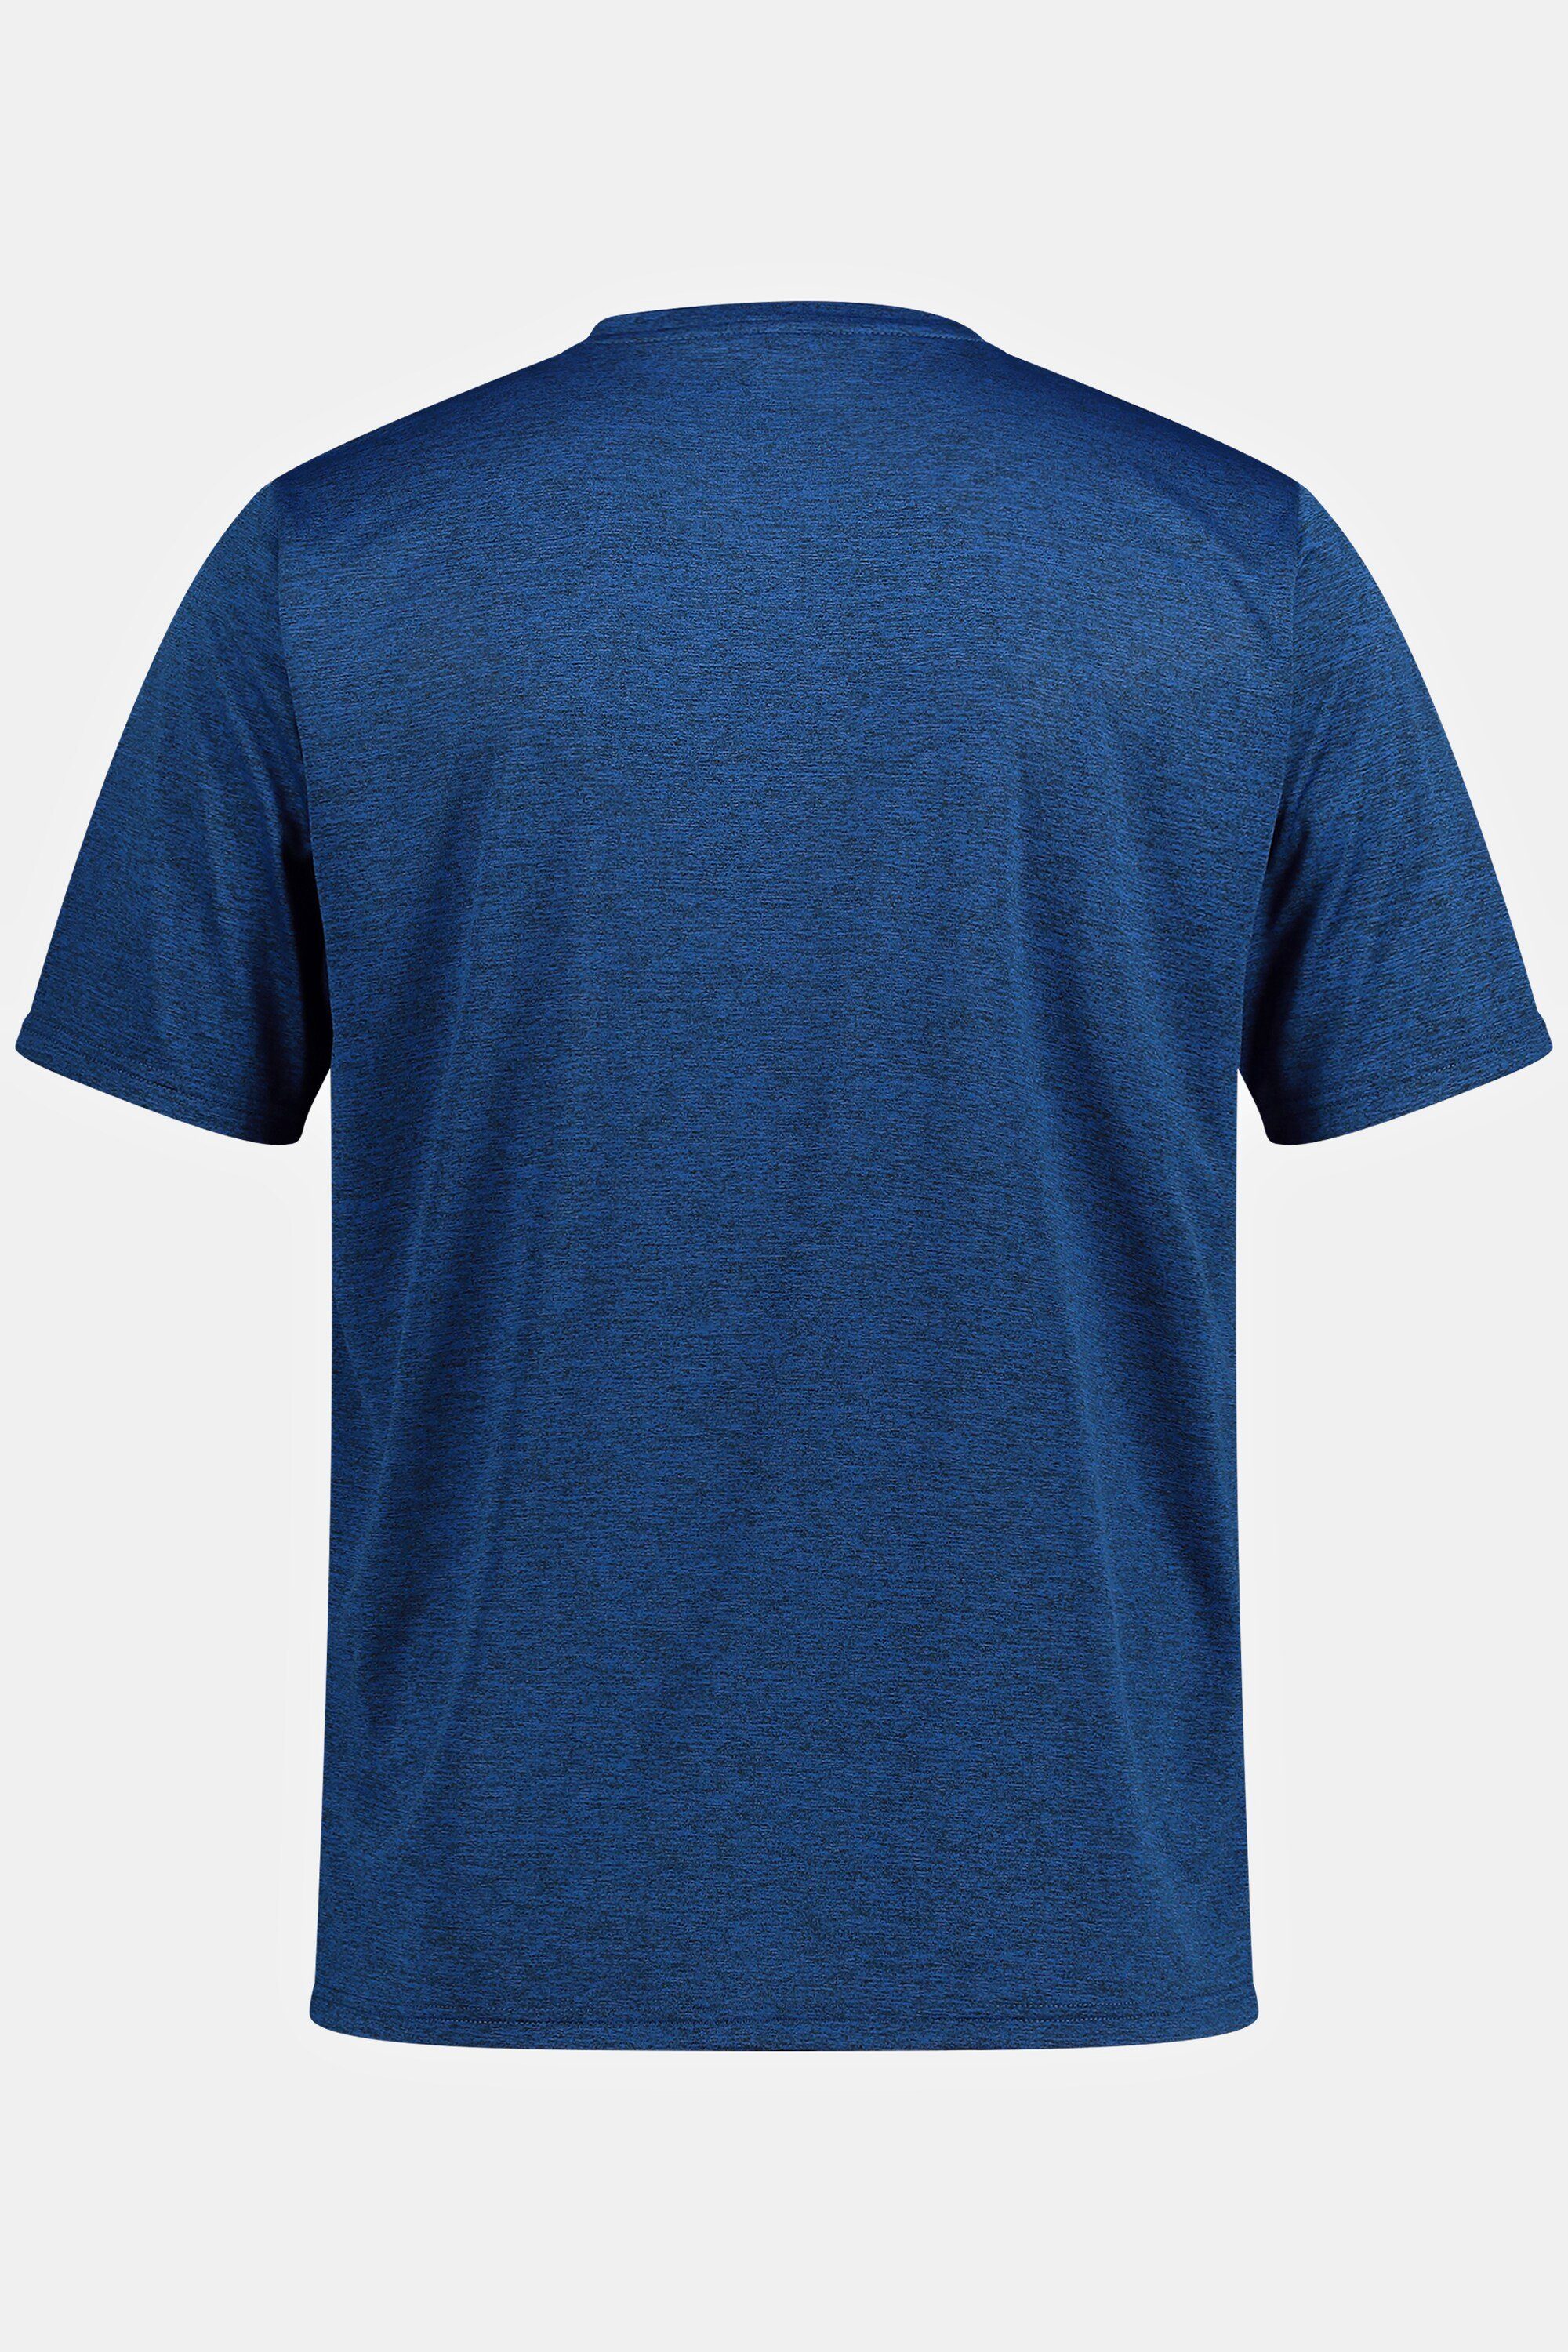 JP1880 T-Shirt Funktions-Shirt FLEXNAMIC® Halbarm blau QuickDry